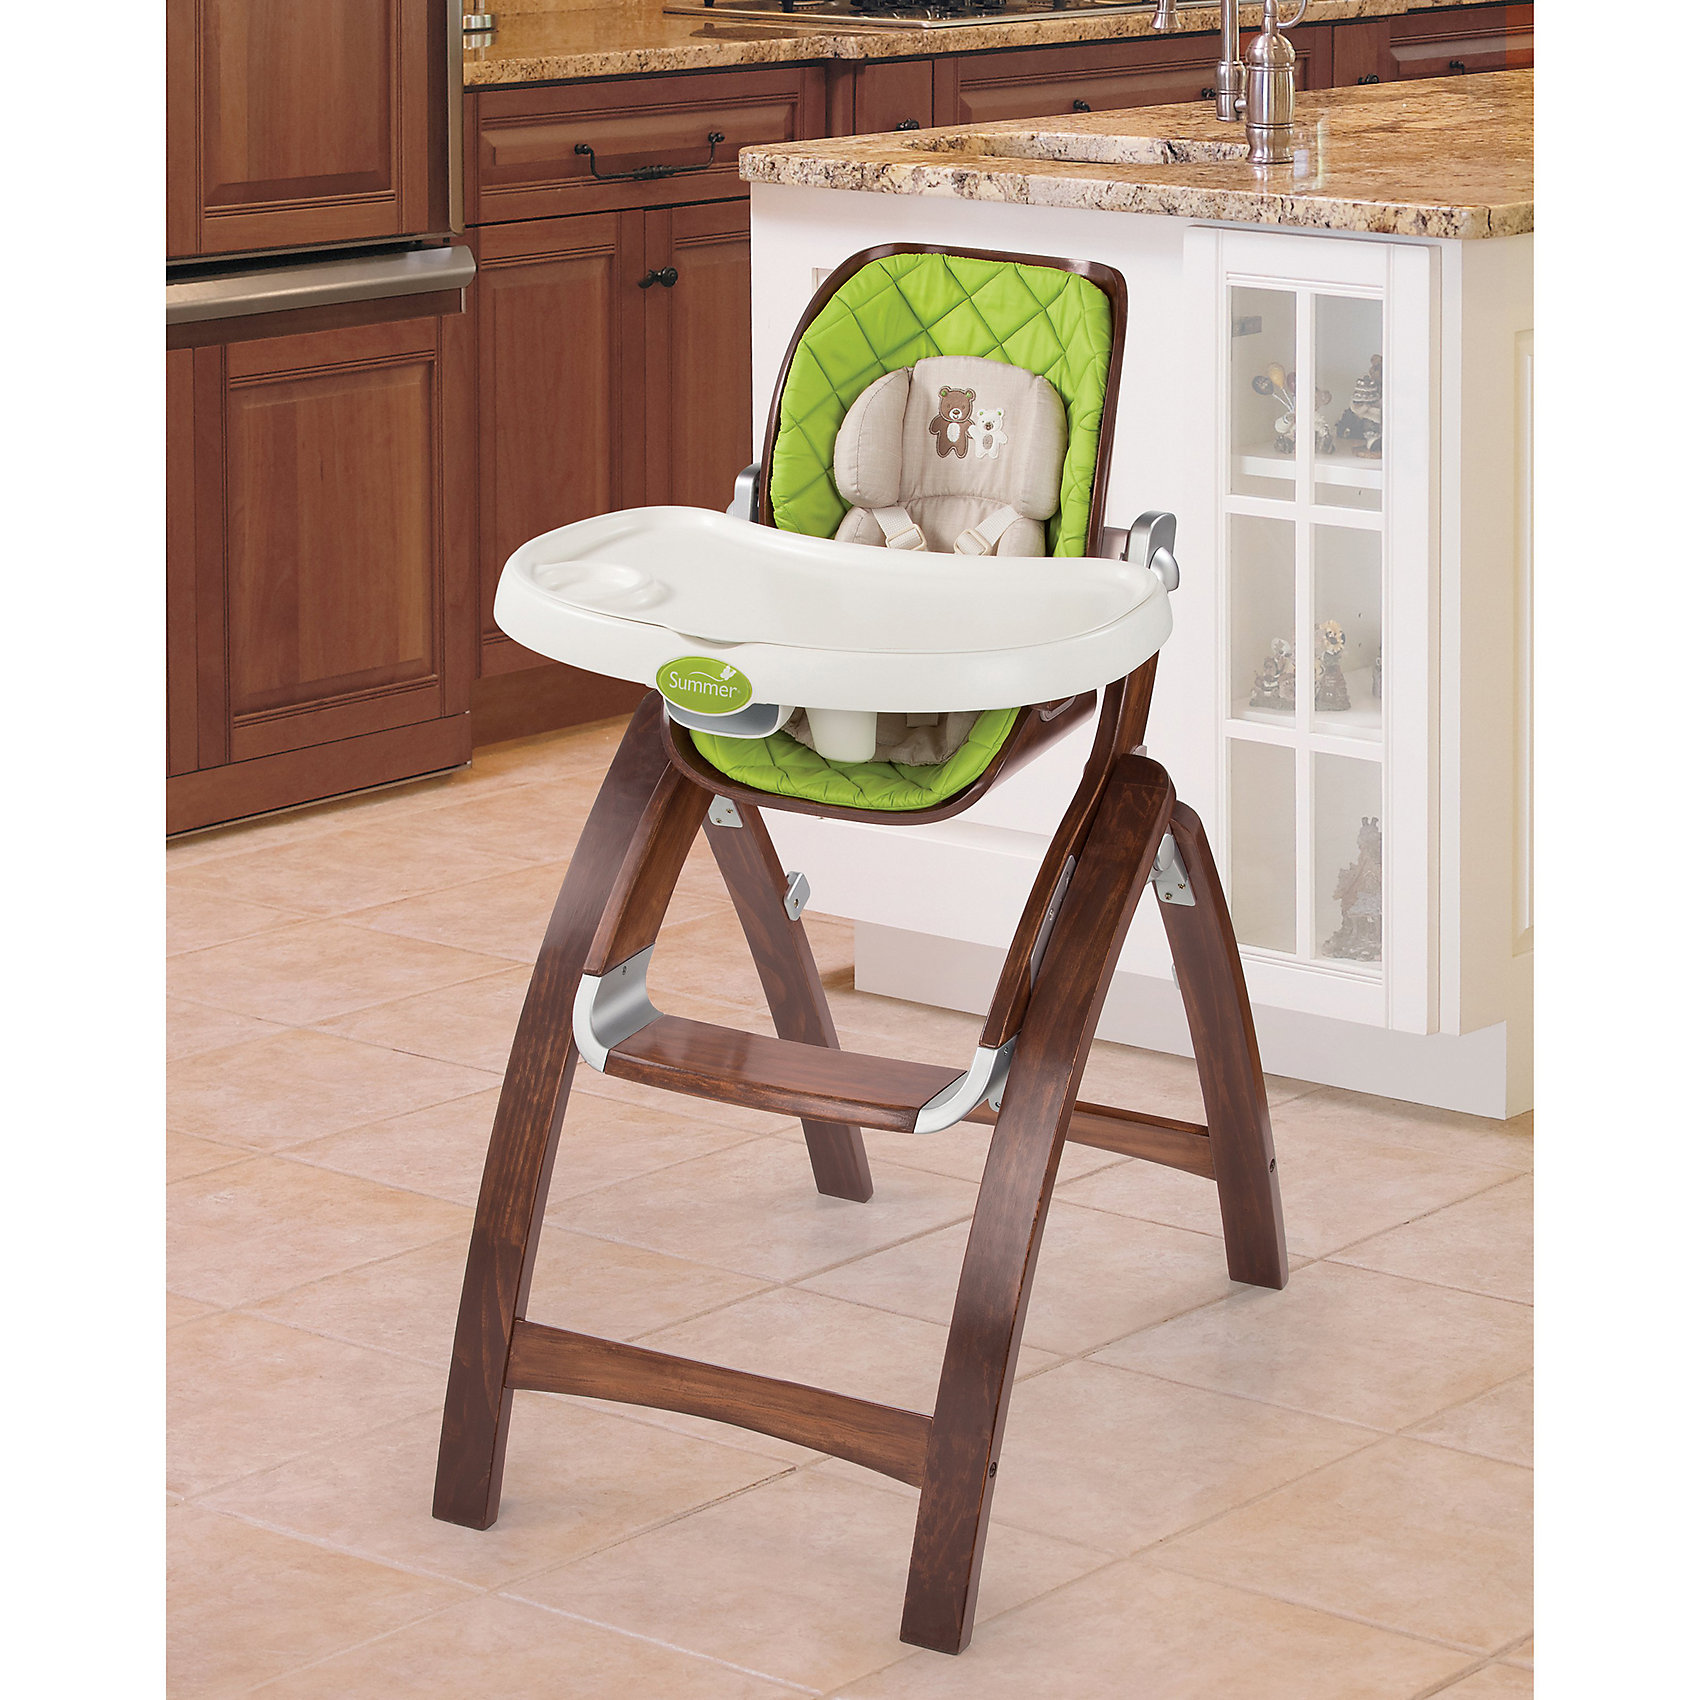 Summer Infant стульчик для кормления